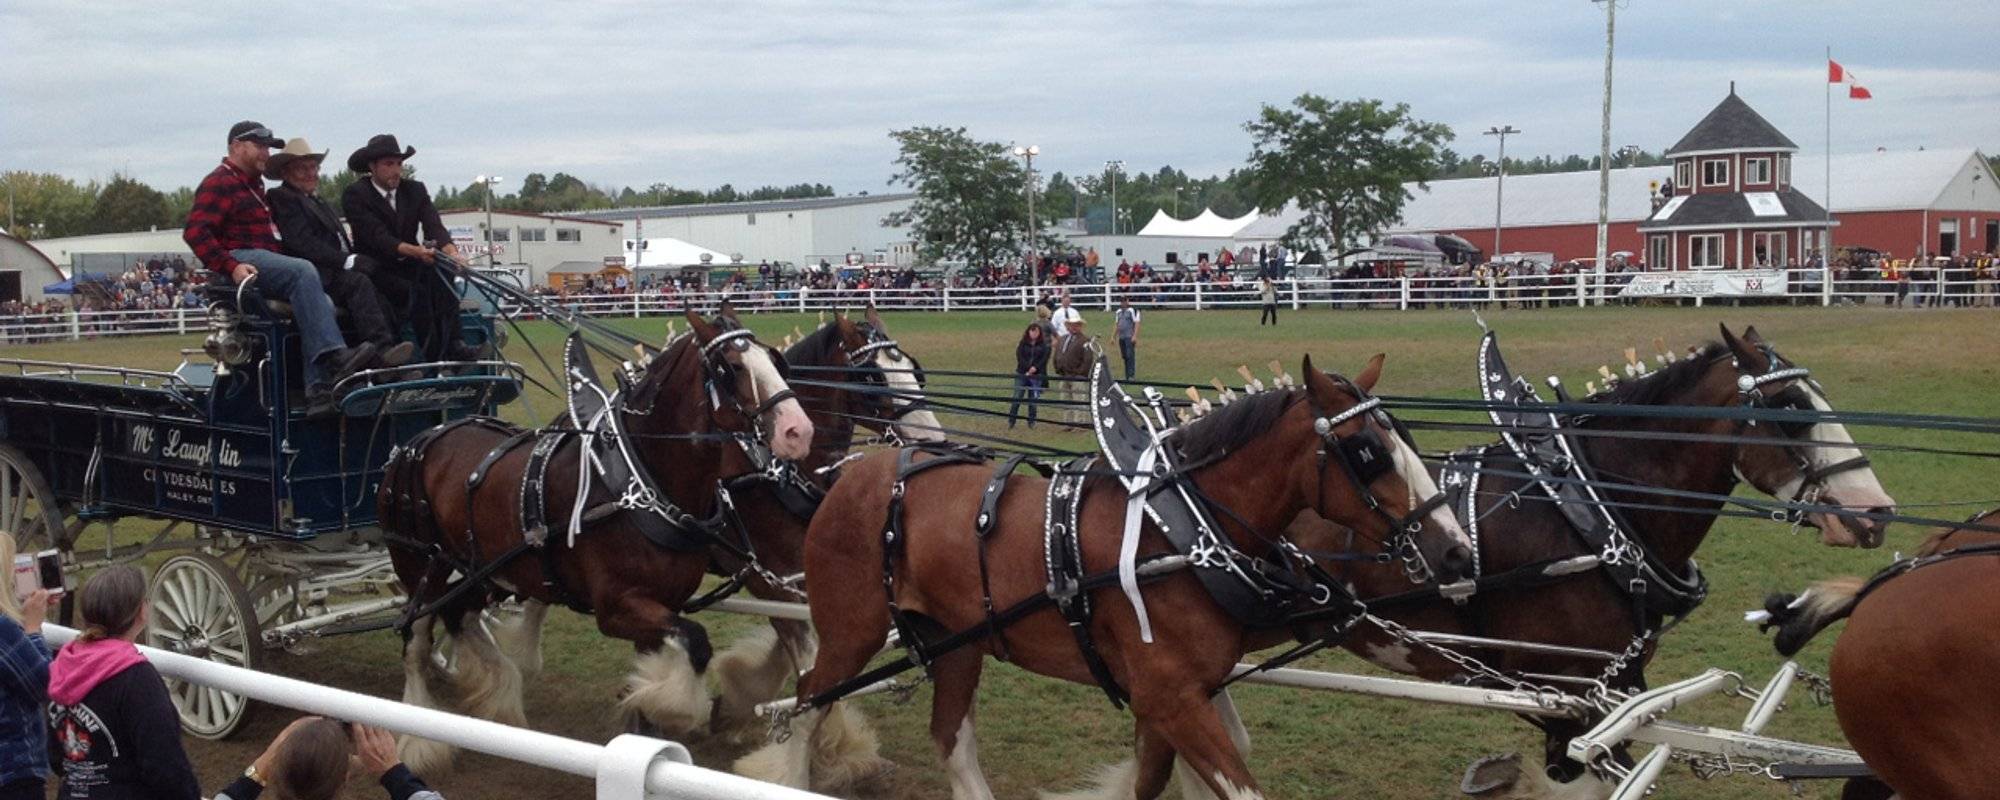 The Carp Fair - Heavy Horse Show